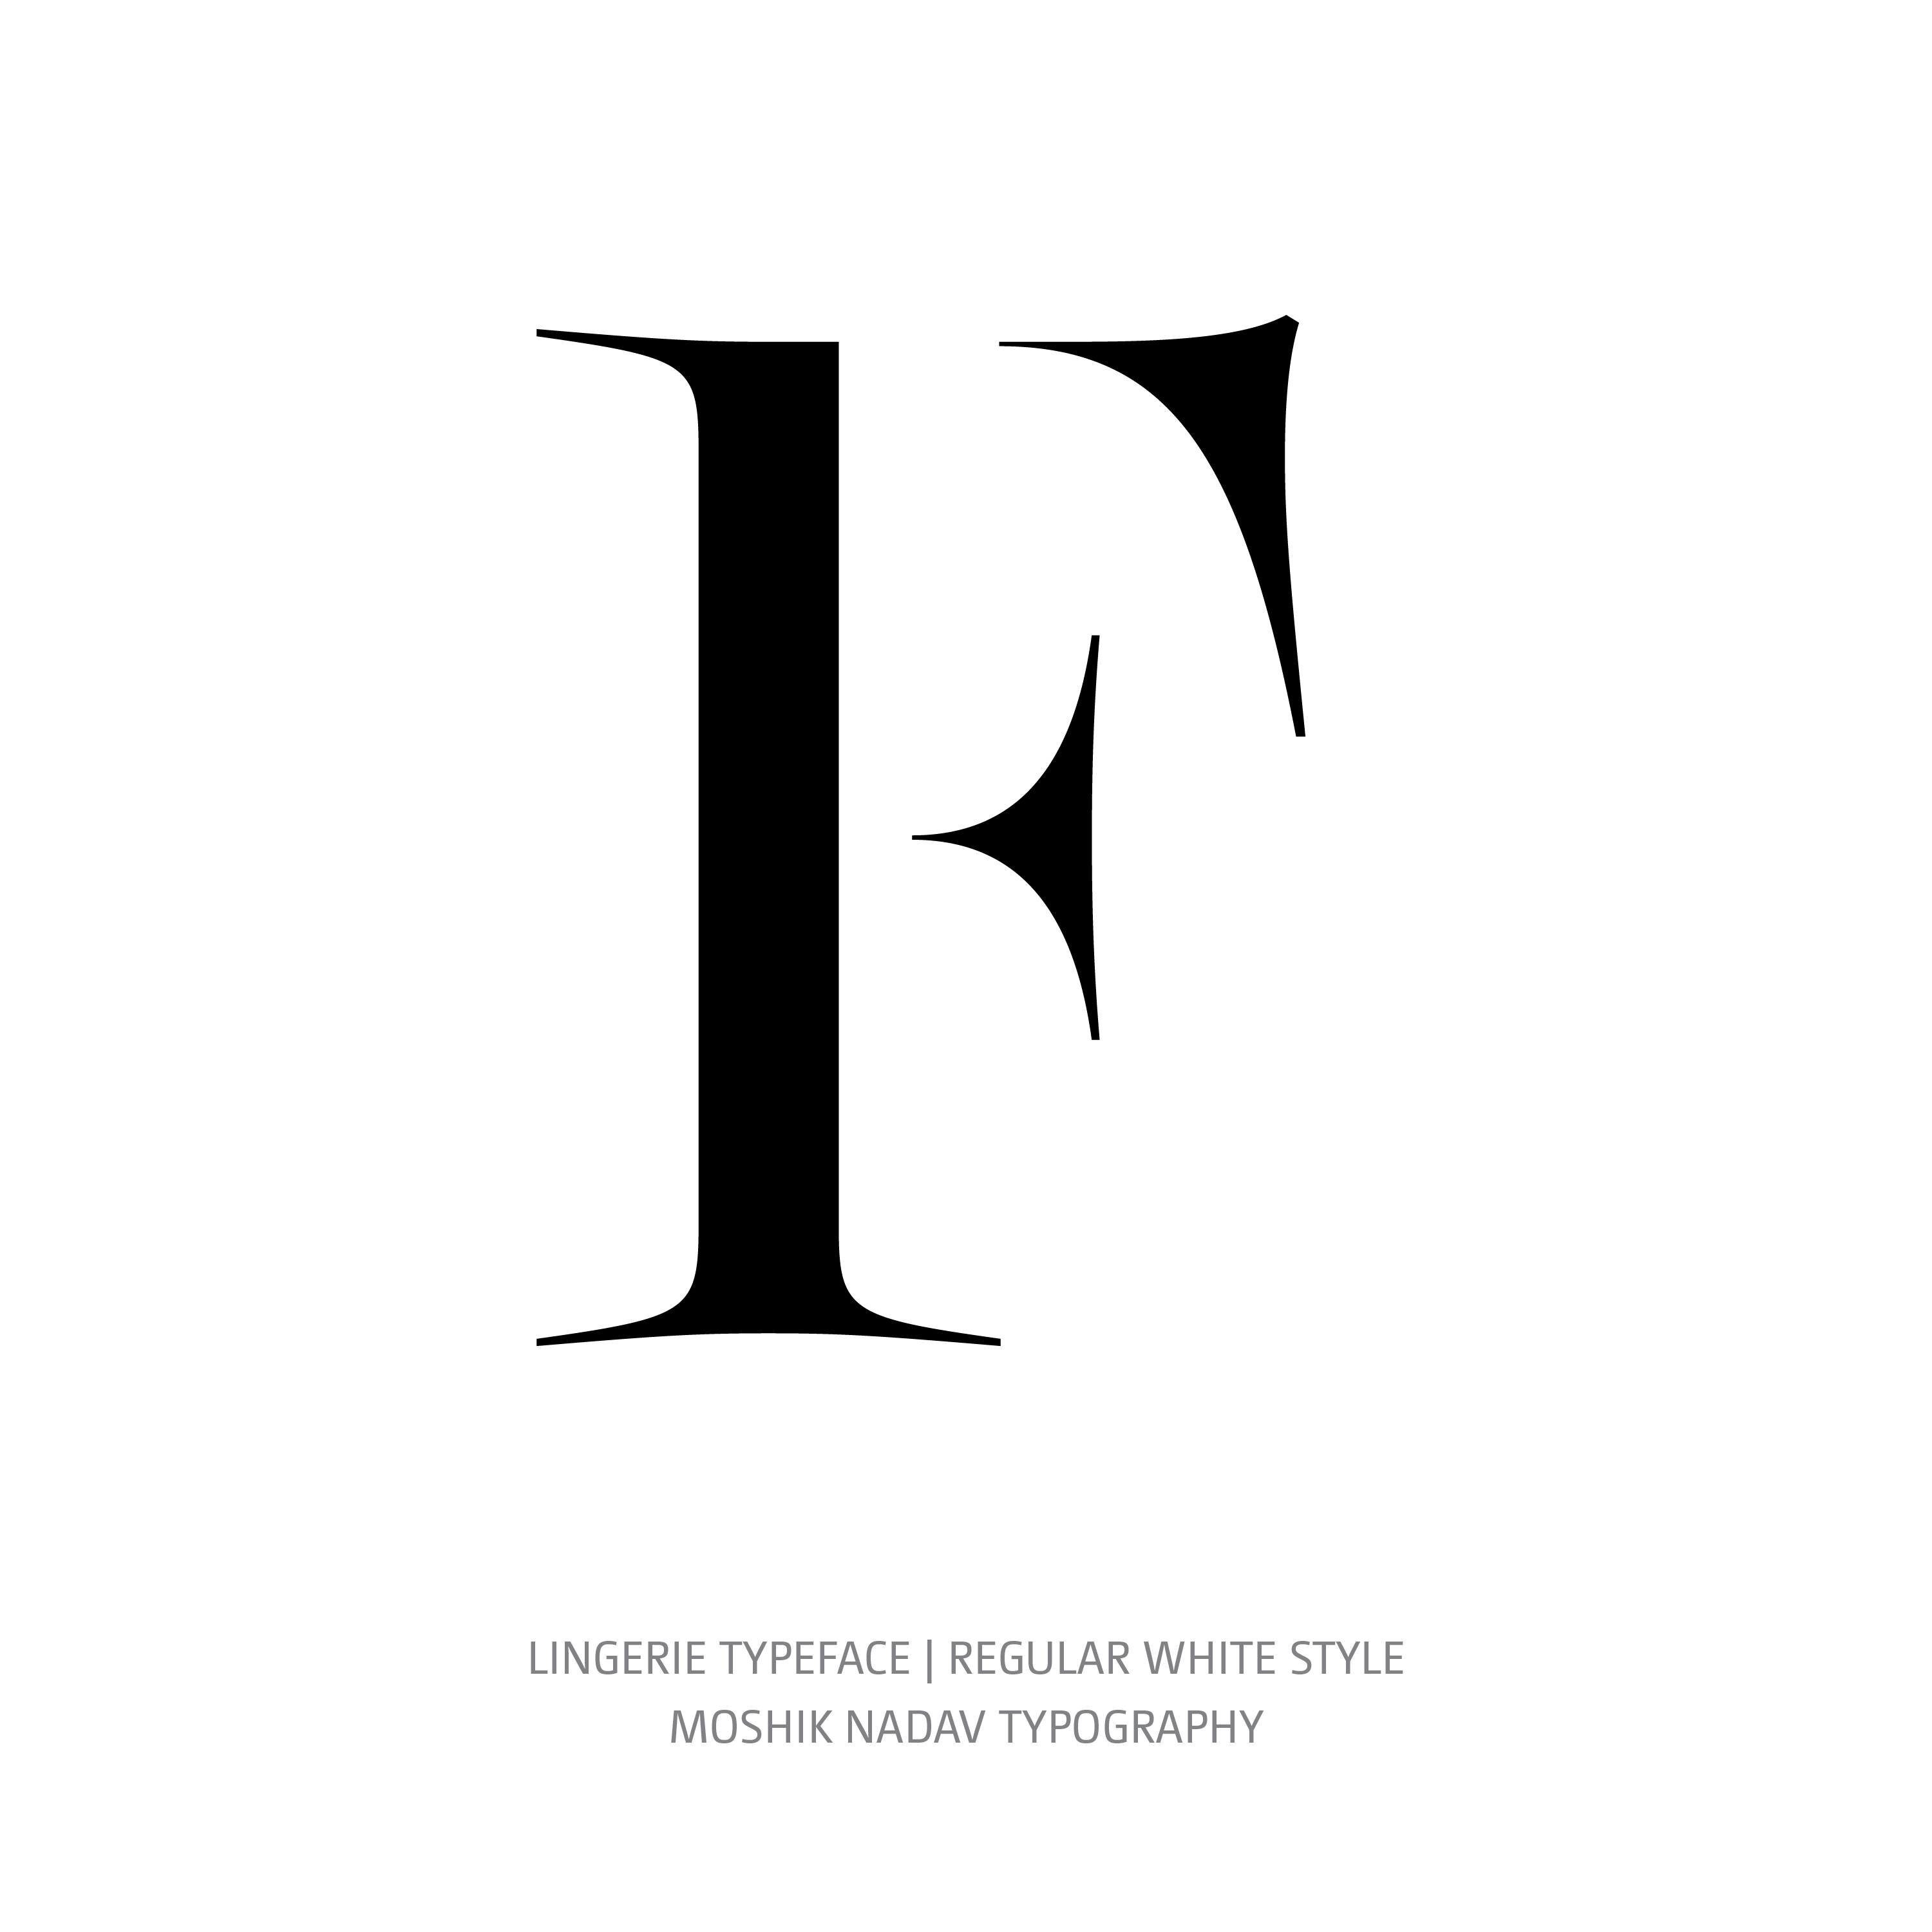 Lingerie Typeface Regular White F